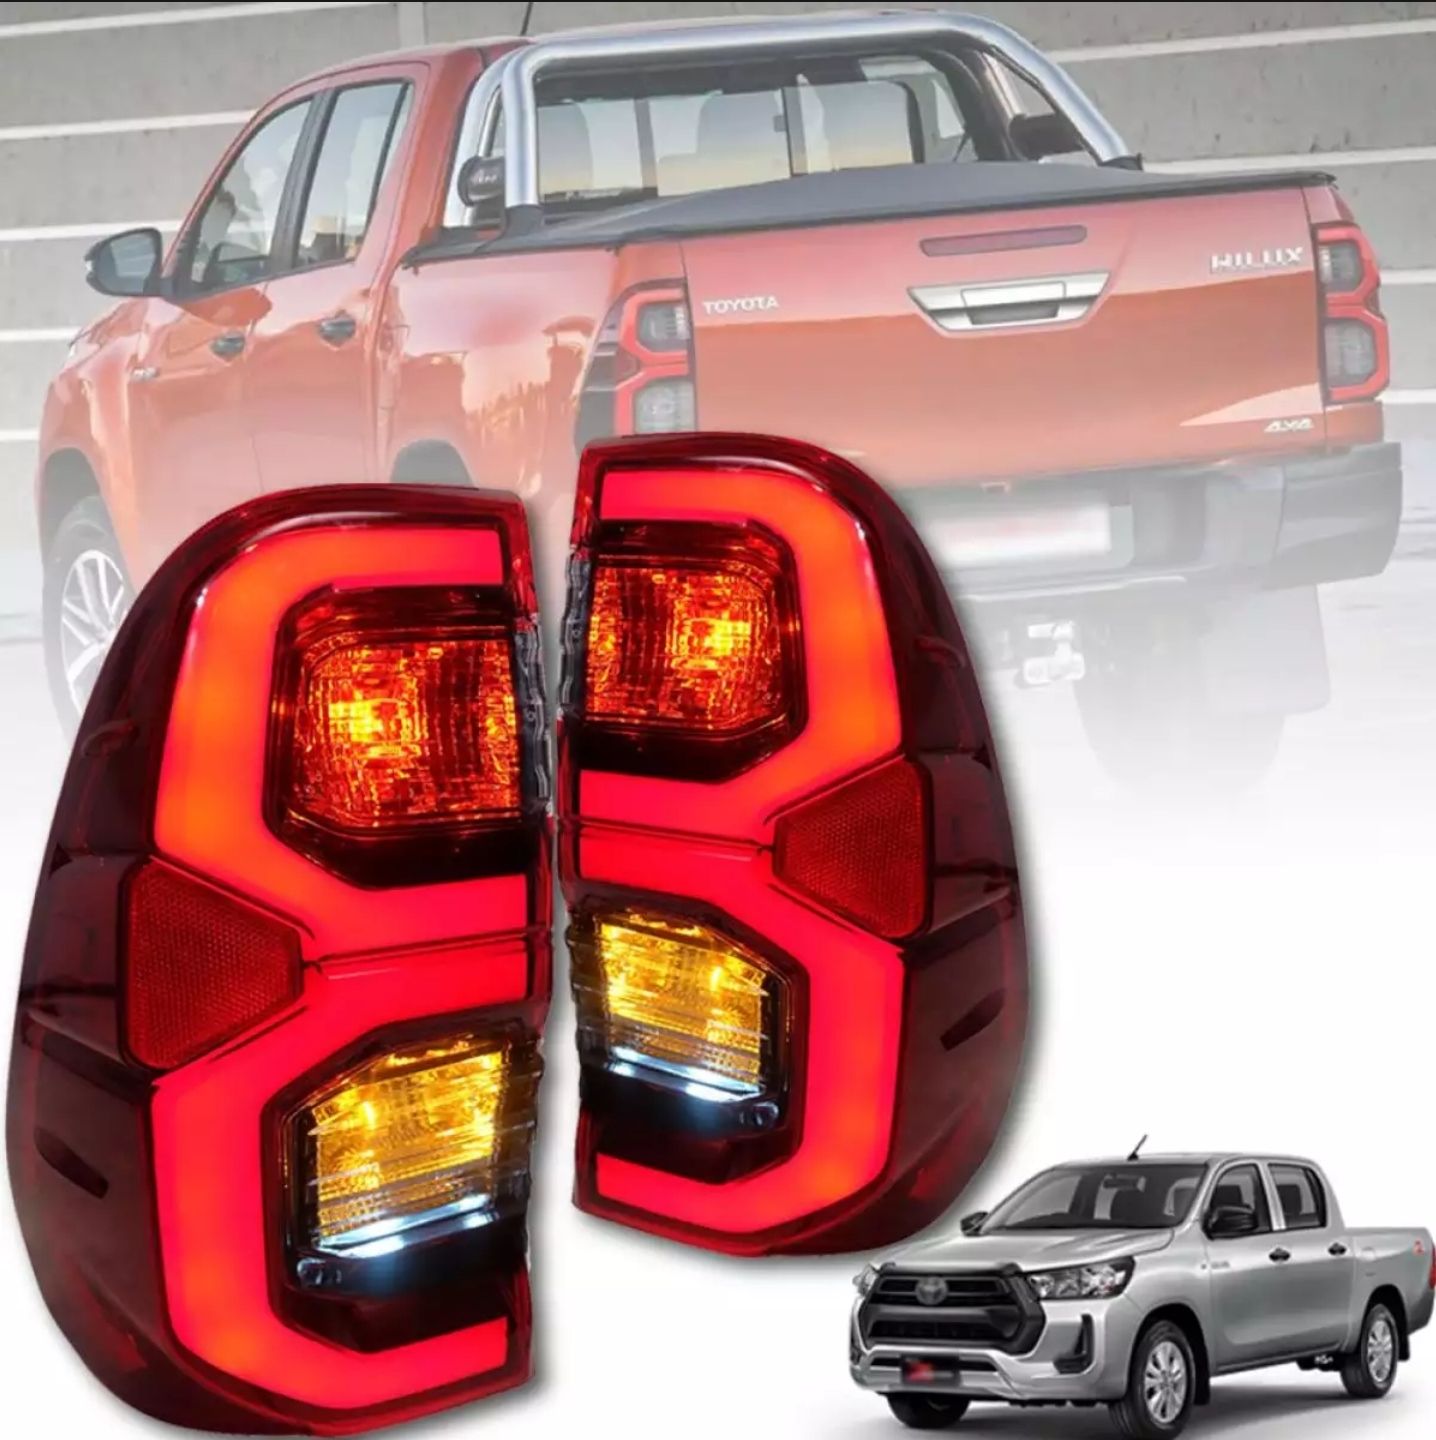 ไฟท้าย LED Toyota Hilux Revo เกรด OEM พร้อมหลอดไฟ ปลั๊กตรงรุ่น รับประกัน 6 เดือน ส่งเก็บเงินปลายทางได้ (ขายคู่)